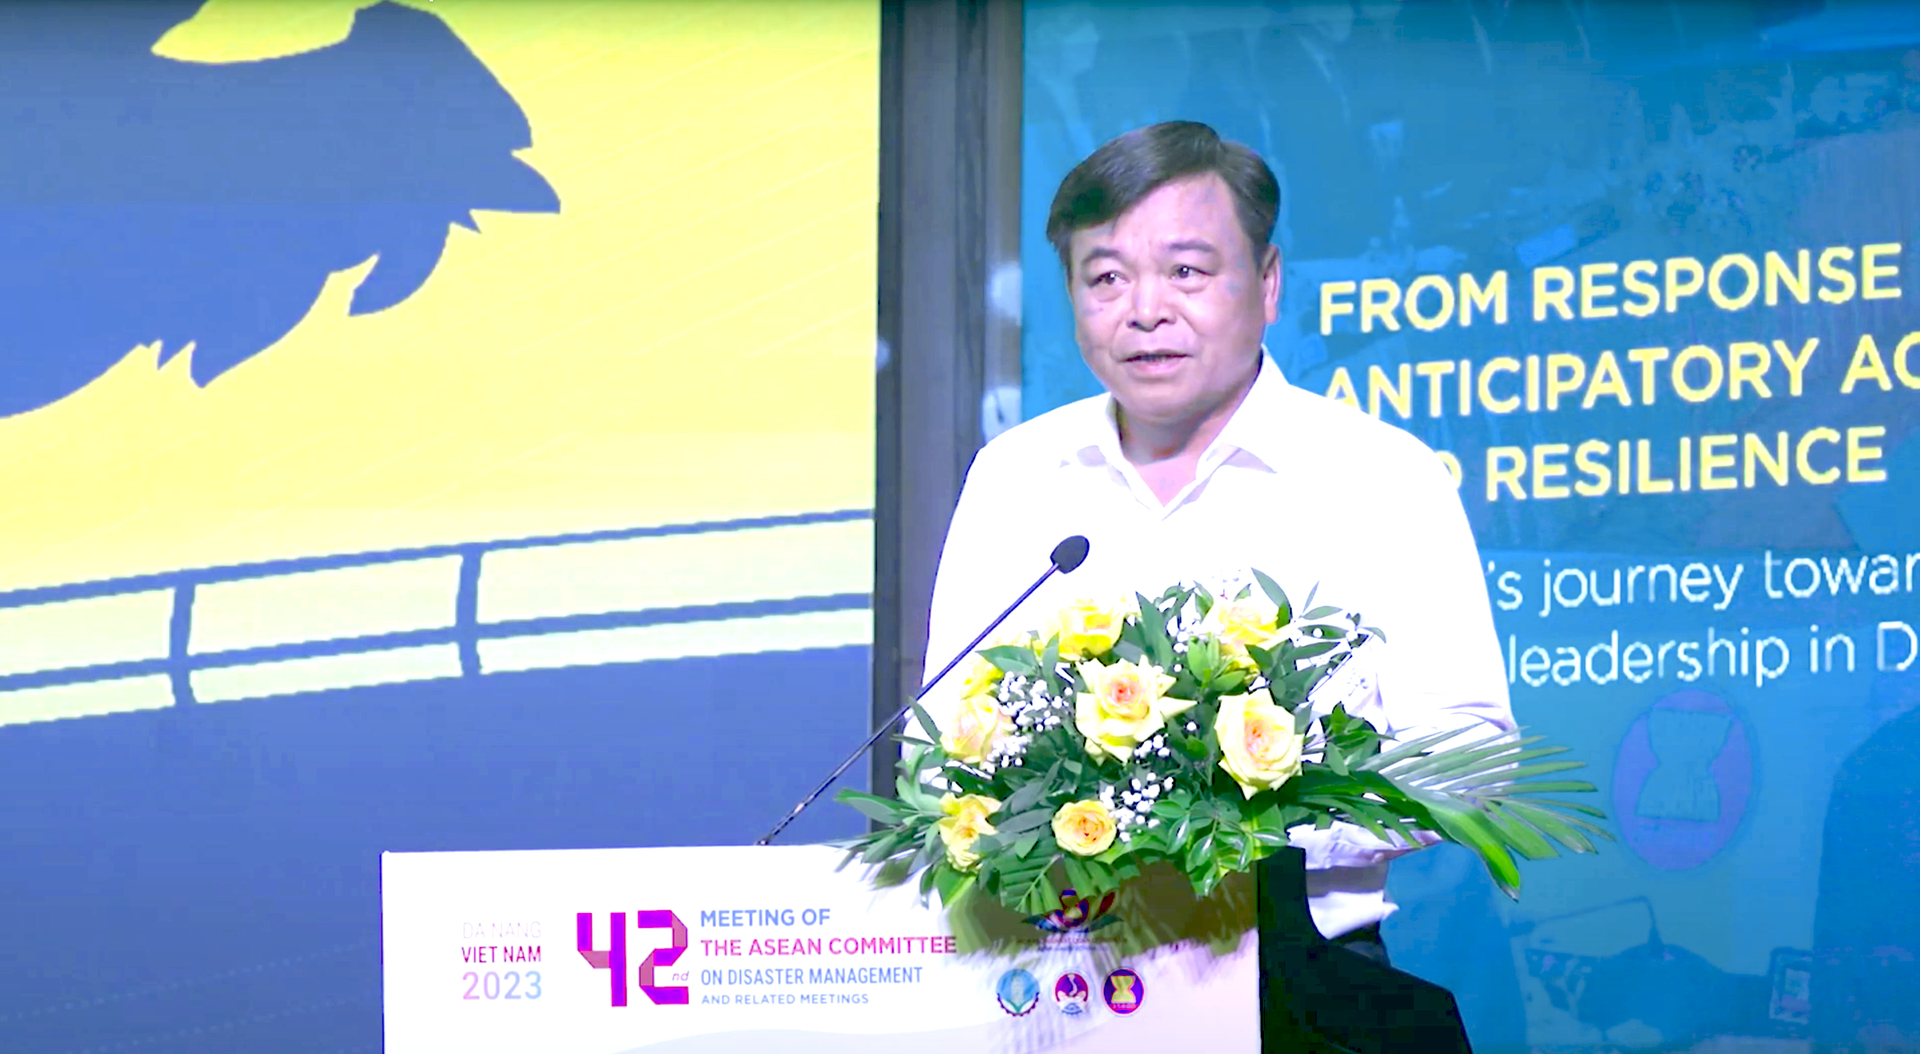 Ông Nguyễn Hoàng Hiệp - Thứ trưởng Bộ NN-PTNT, Phó trưởng Ban chỉ đạo Quốc gia về phòng chống thiên tai phát biểu khai mạc Hội nghị Ủy ban ASEAN về quản lý thiên tai lần thứ 42, diễn ra tại Đà Nẵng.